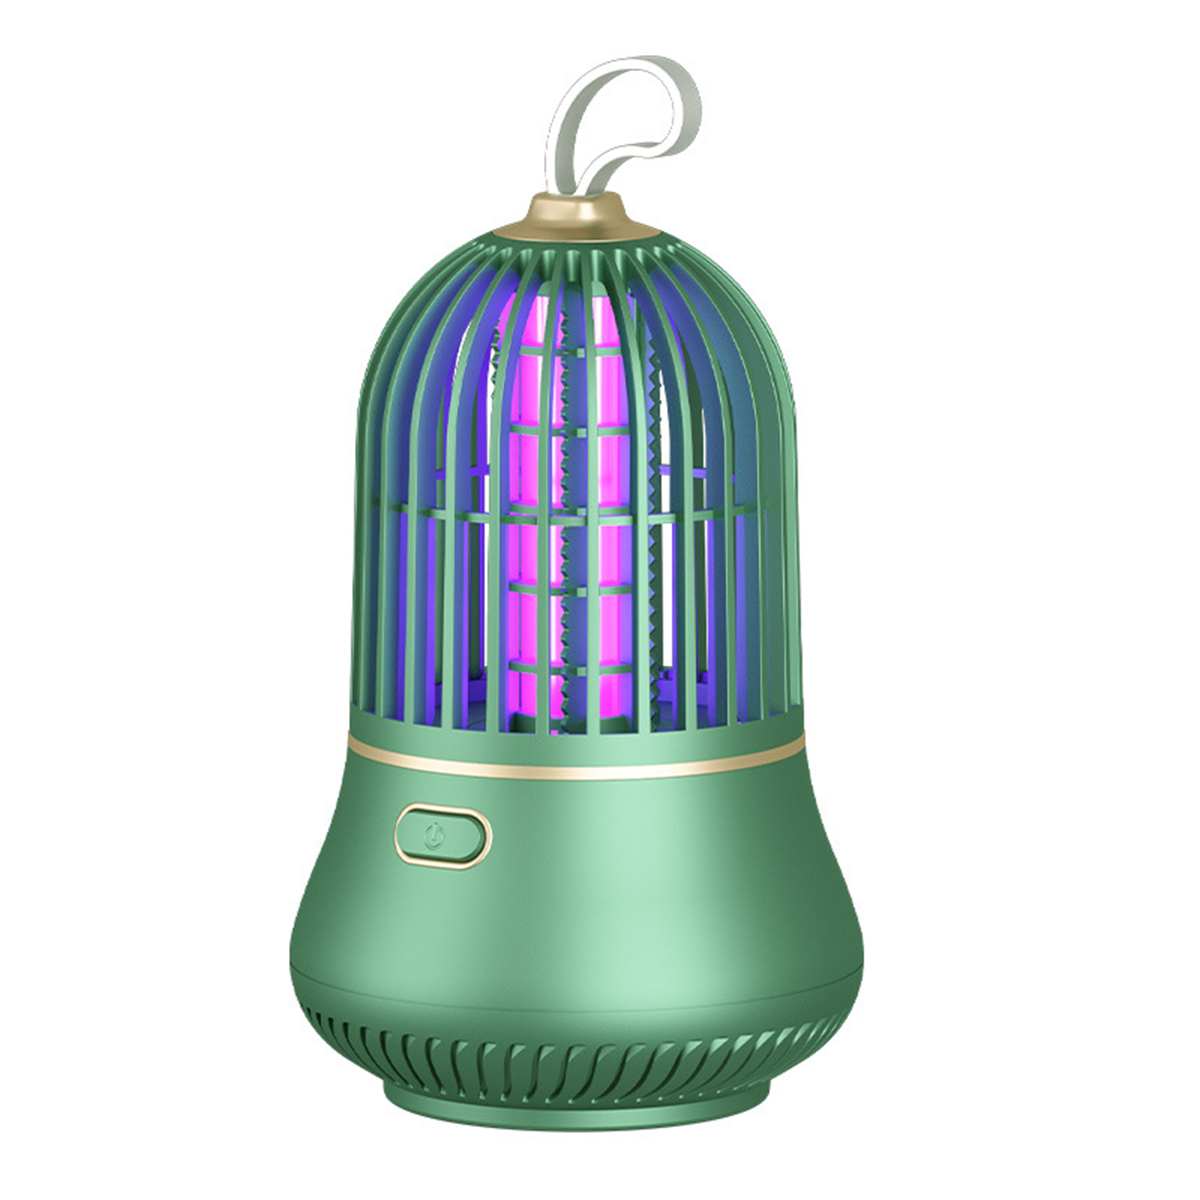 BRIGHTAKE USB-LED Moskito Killer Lampe effektive Schädlingsbekämpfung Insektenvernichter und für leise